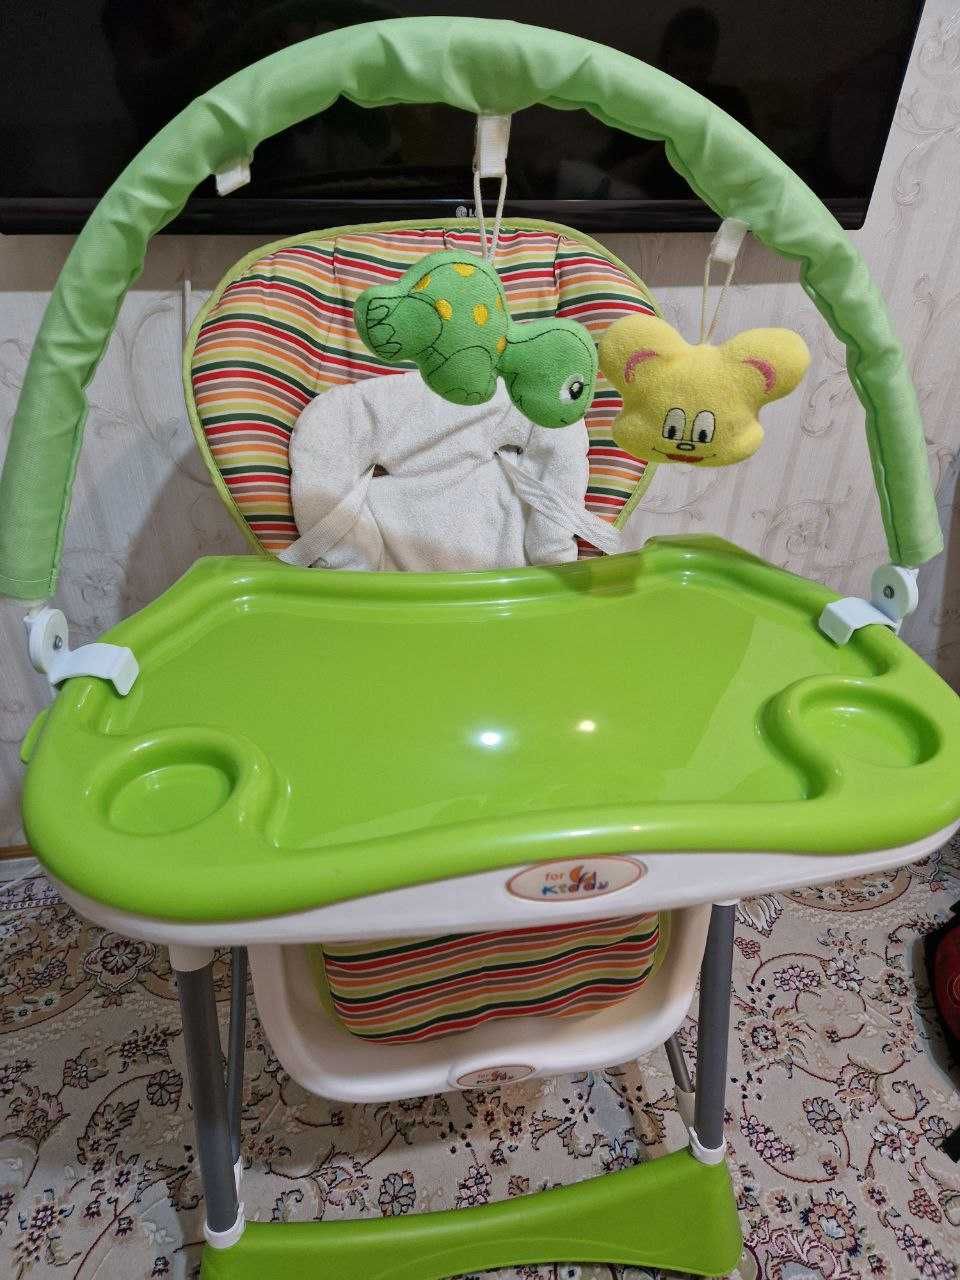 Детский стульчик для кормления ForKiddy Optimum Green